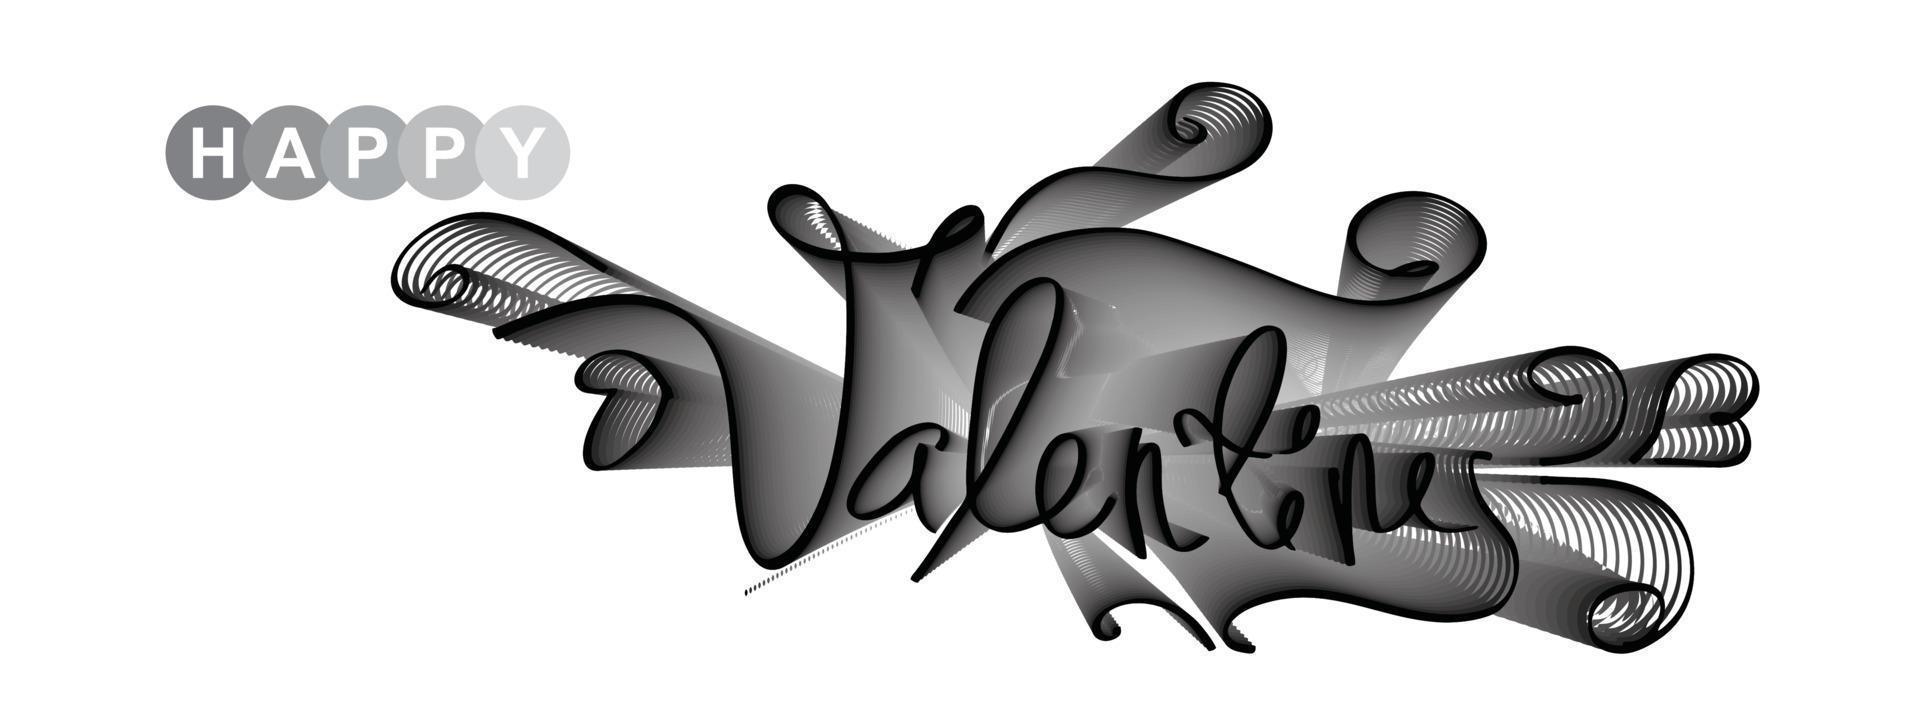 calligraphie typographie saint valentin. bonne Saint-Valentin. vecteur